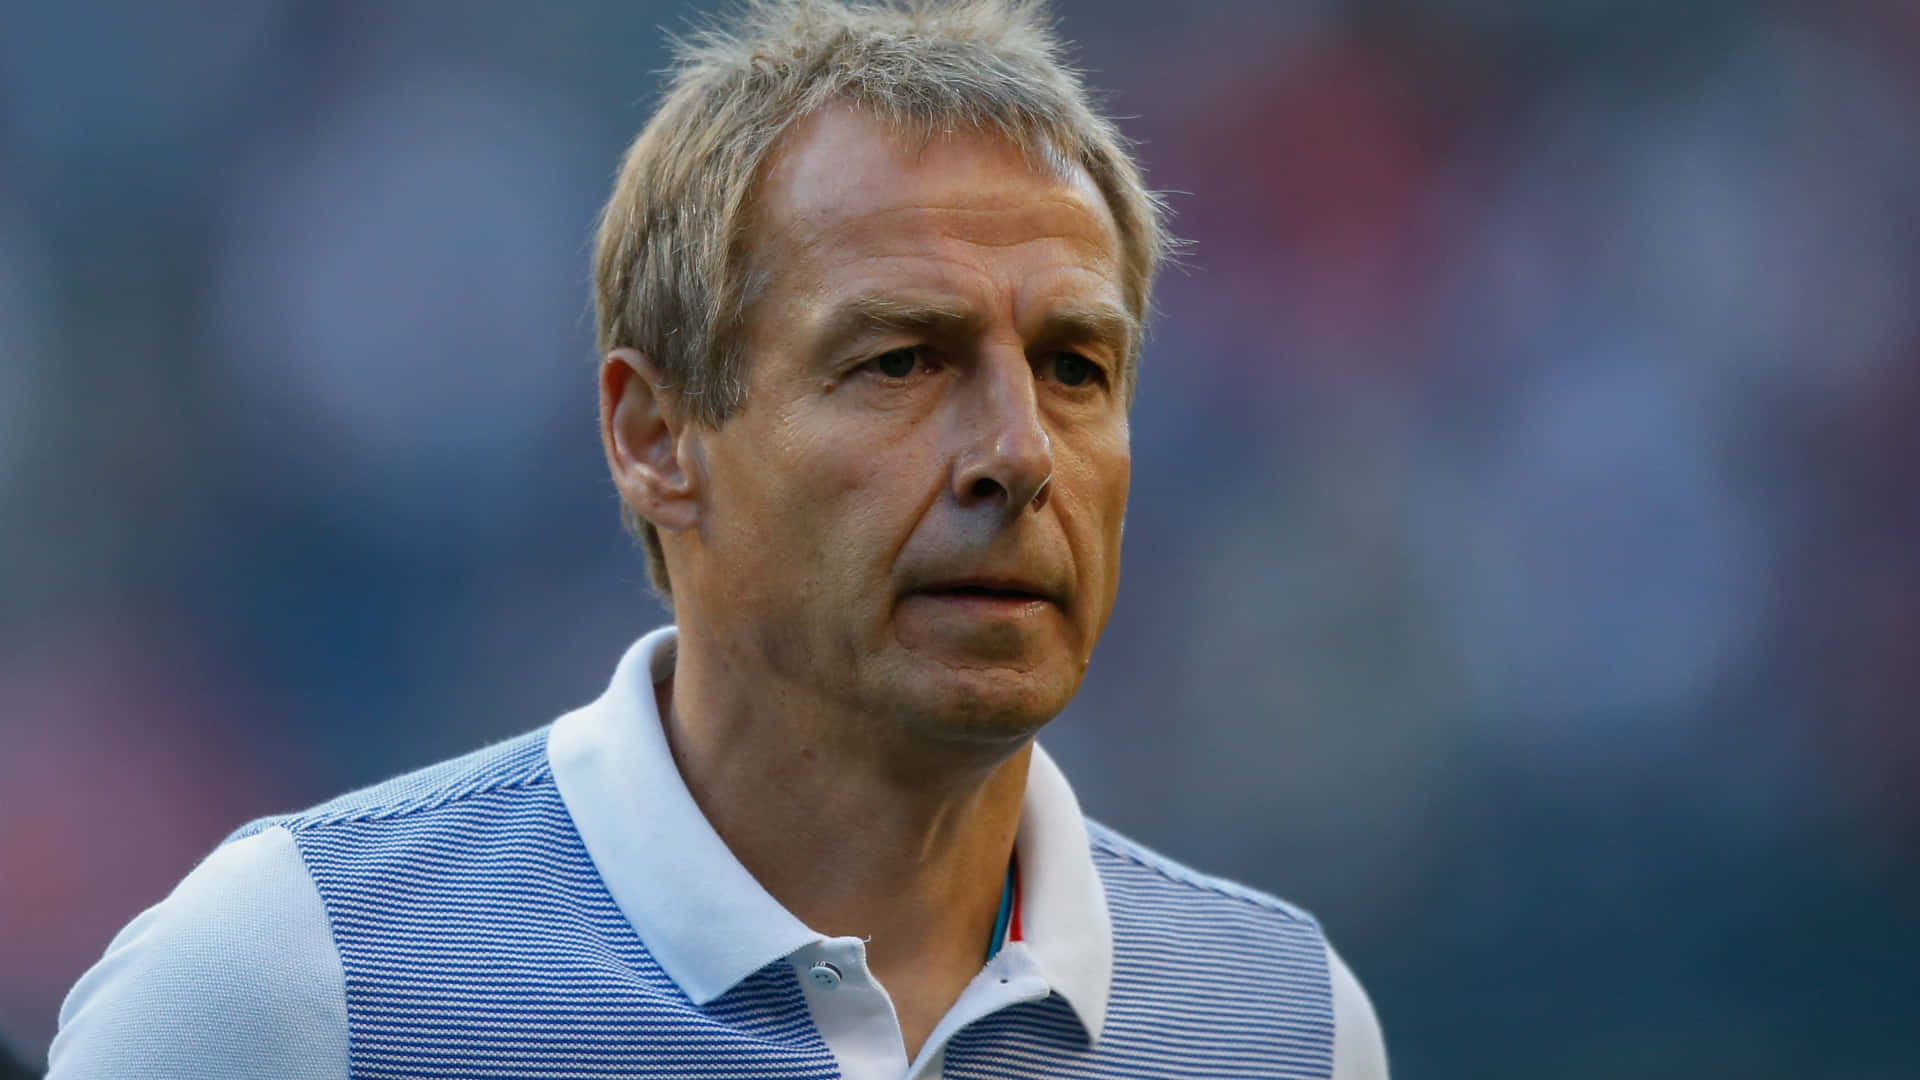 Jurgen Klinsmann, den professionelle tyske fodboldspiller, ses iført sine klubfarver. Wallpaper